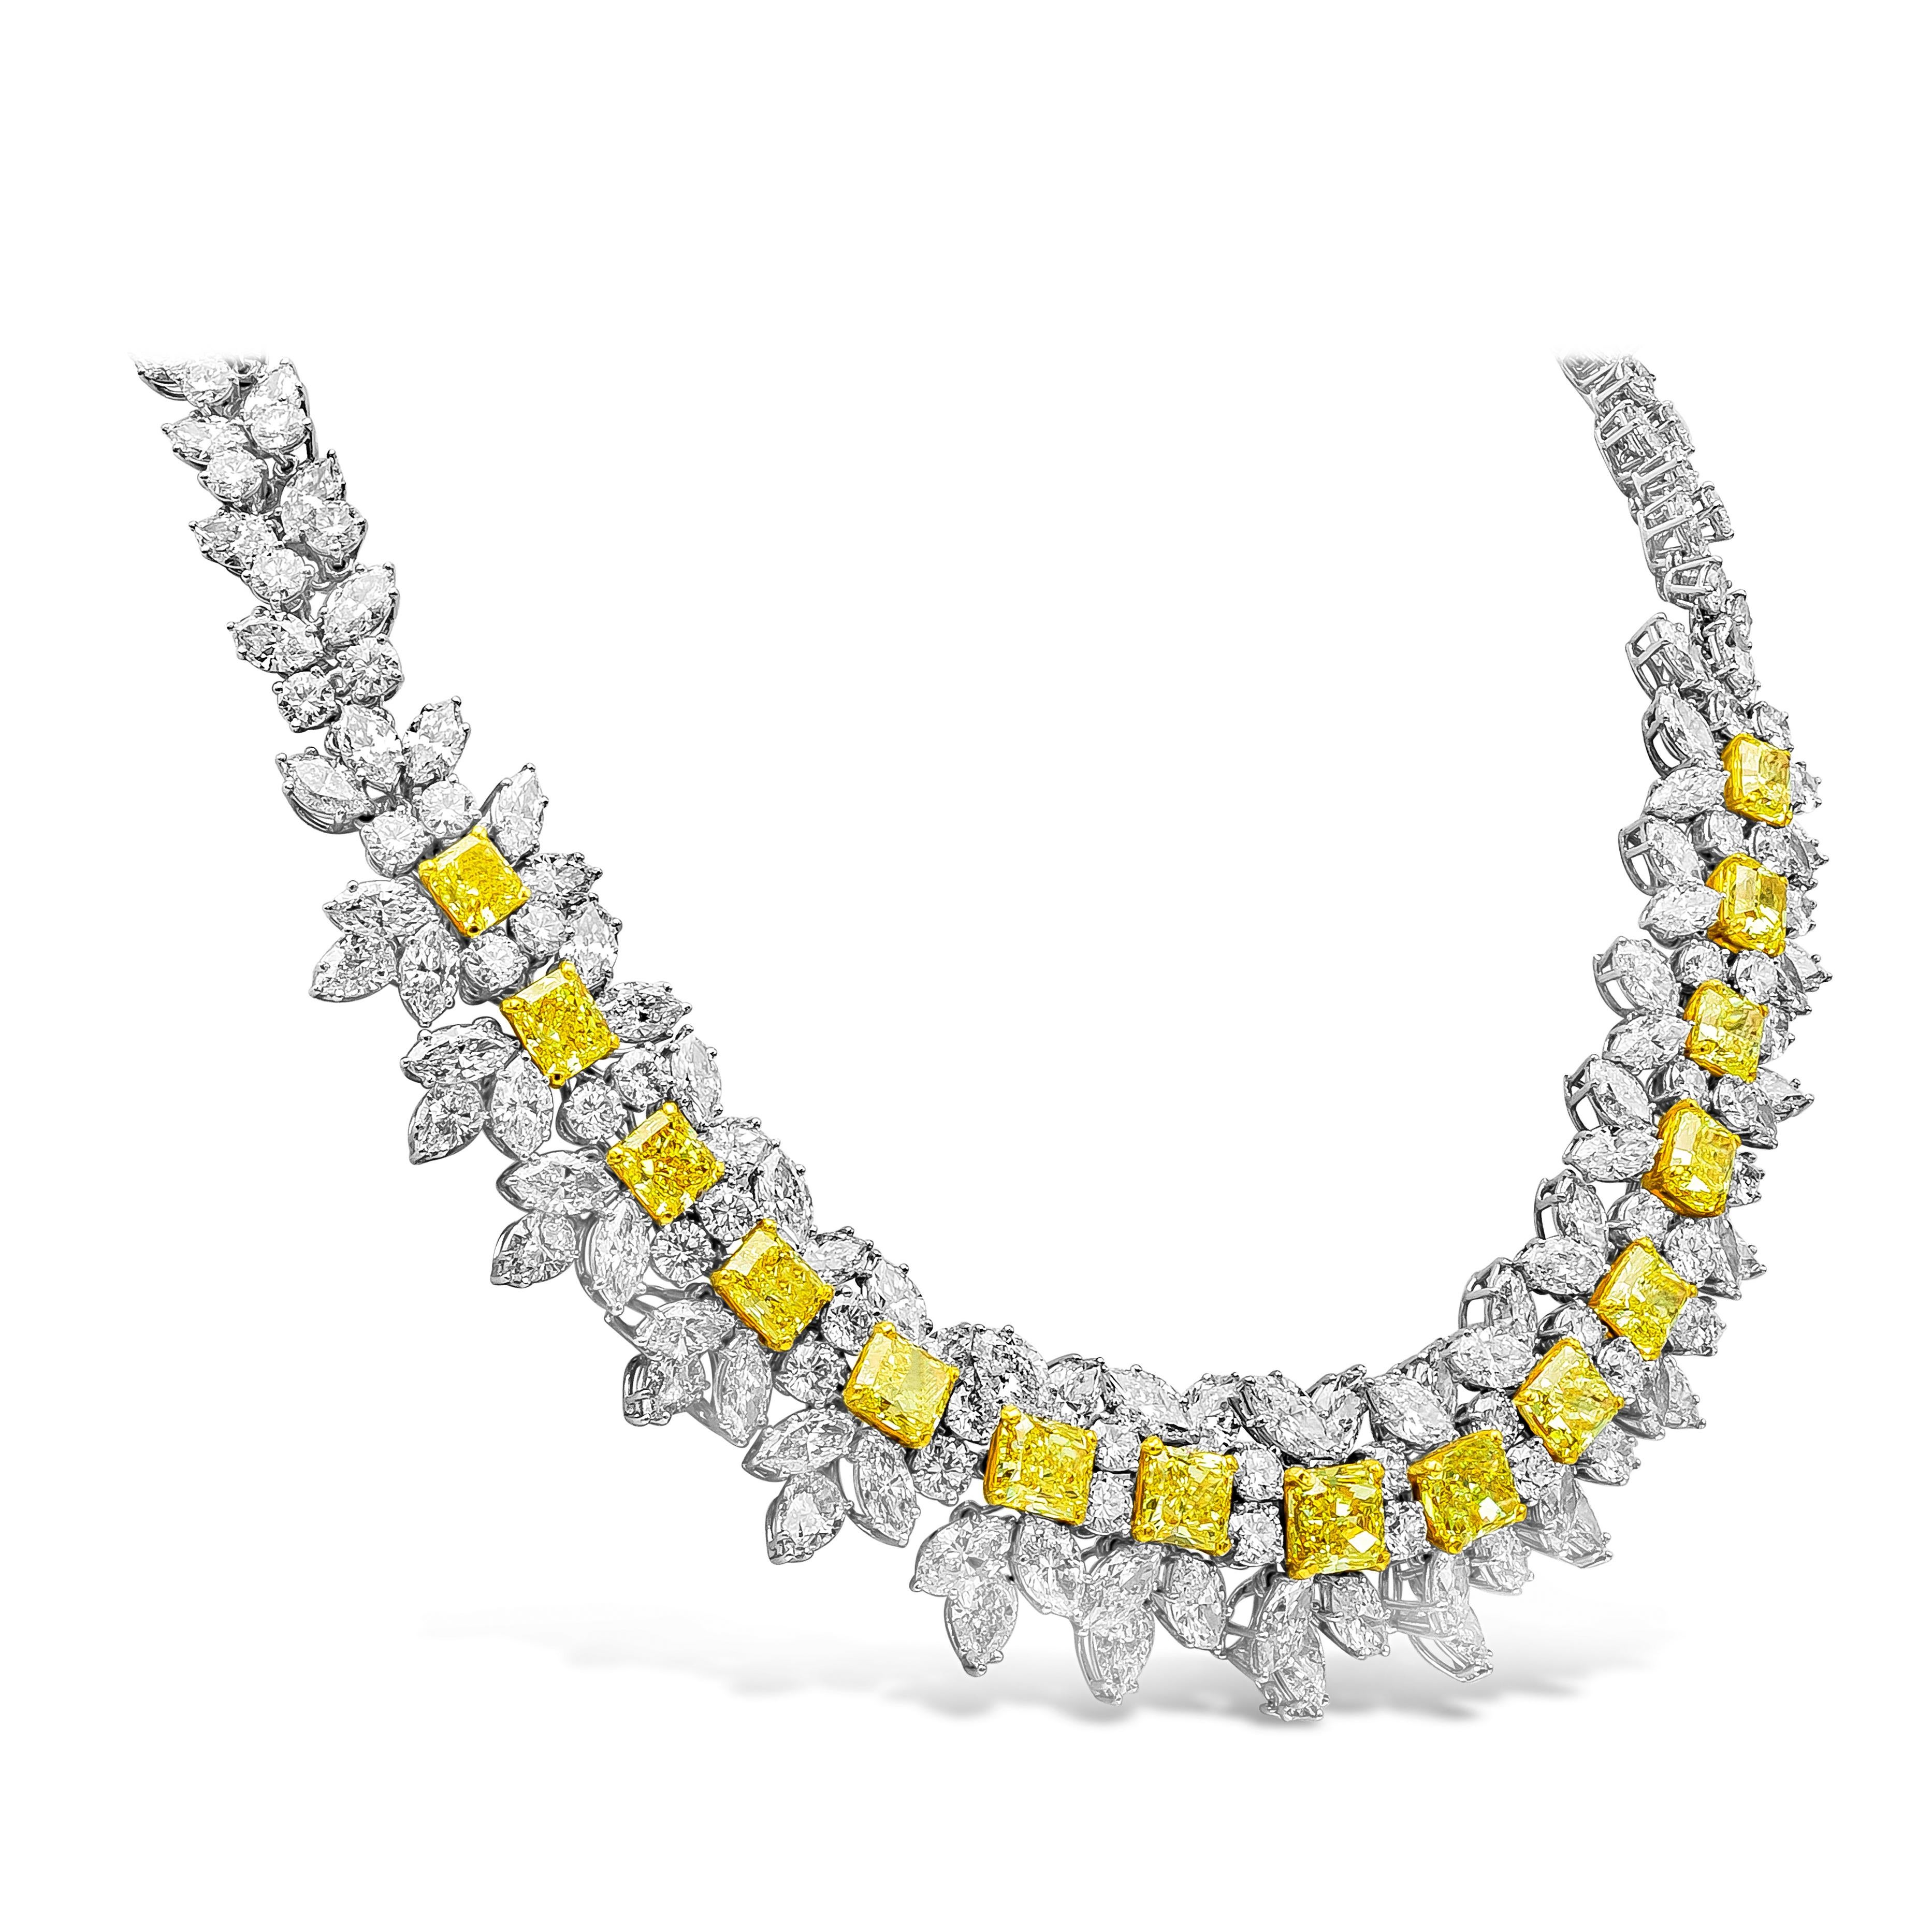 Un important et très rare collier de diamants mettant en valeur une rangée de diamants jaunes intenses gradués de taille radieuse, entourés de diamants blancs brillants dans un design complexe et créatif. Des diamants jaunes pèsent 23.45 carats au